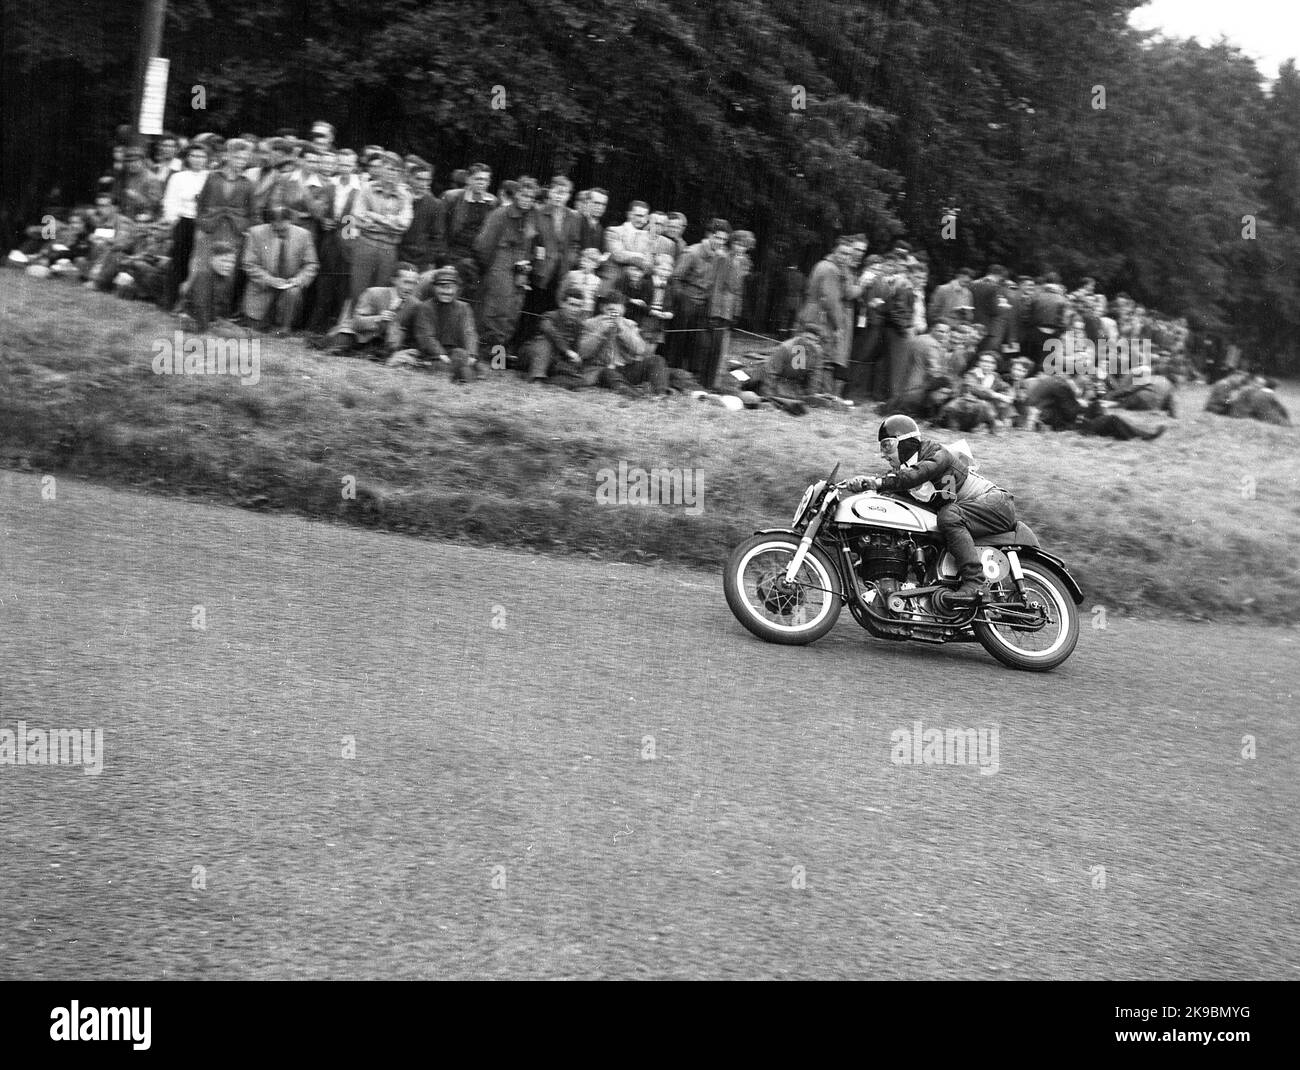 1954, historisch, ein männlicher Konkurrent auf einem Norton Motorrad auf der Rennstrecke Oliver's Mount Road in Scarborough, beobachtet von Zuschauern, die höher auf dem Kurs auf dem Rasen stehen, England, Großbritannien. Die hügelige Rennstrecke am Oliver's Mount ist Englands einzige natürliche „Road“-Rennstrecke und in dieser Zeit waren die Veranstaltungen als die Scarborough Races bekannt. Stockfoto